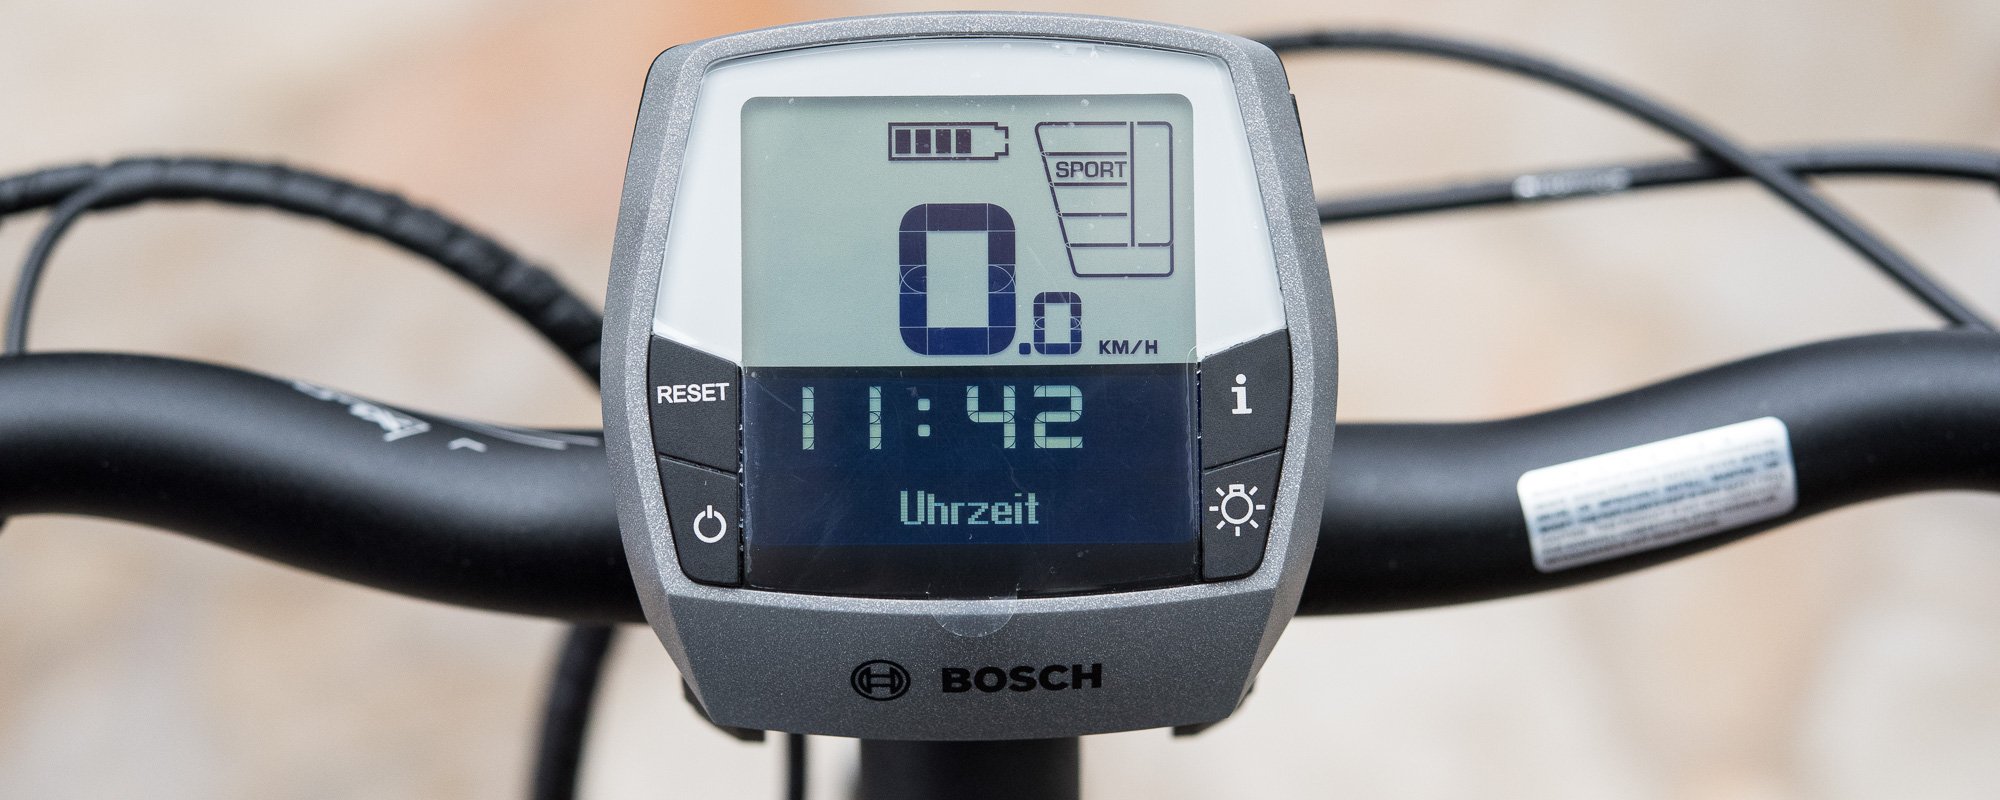 Uhrzeit Bosch Display » GPS Radler